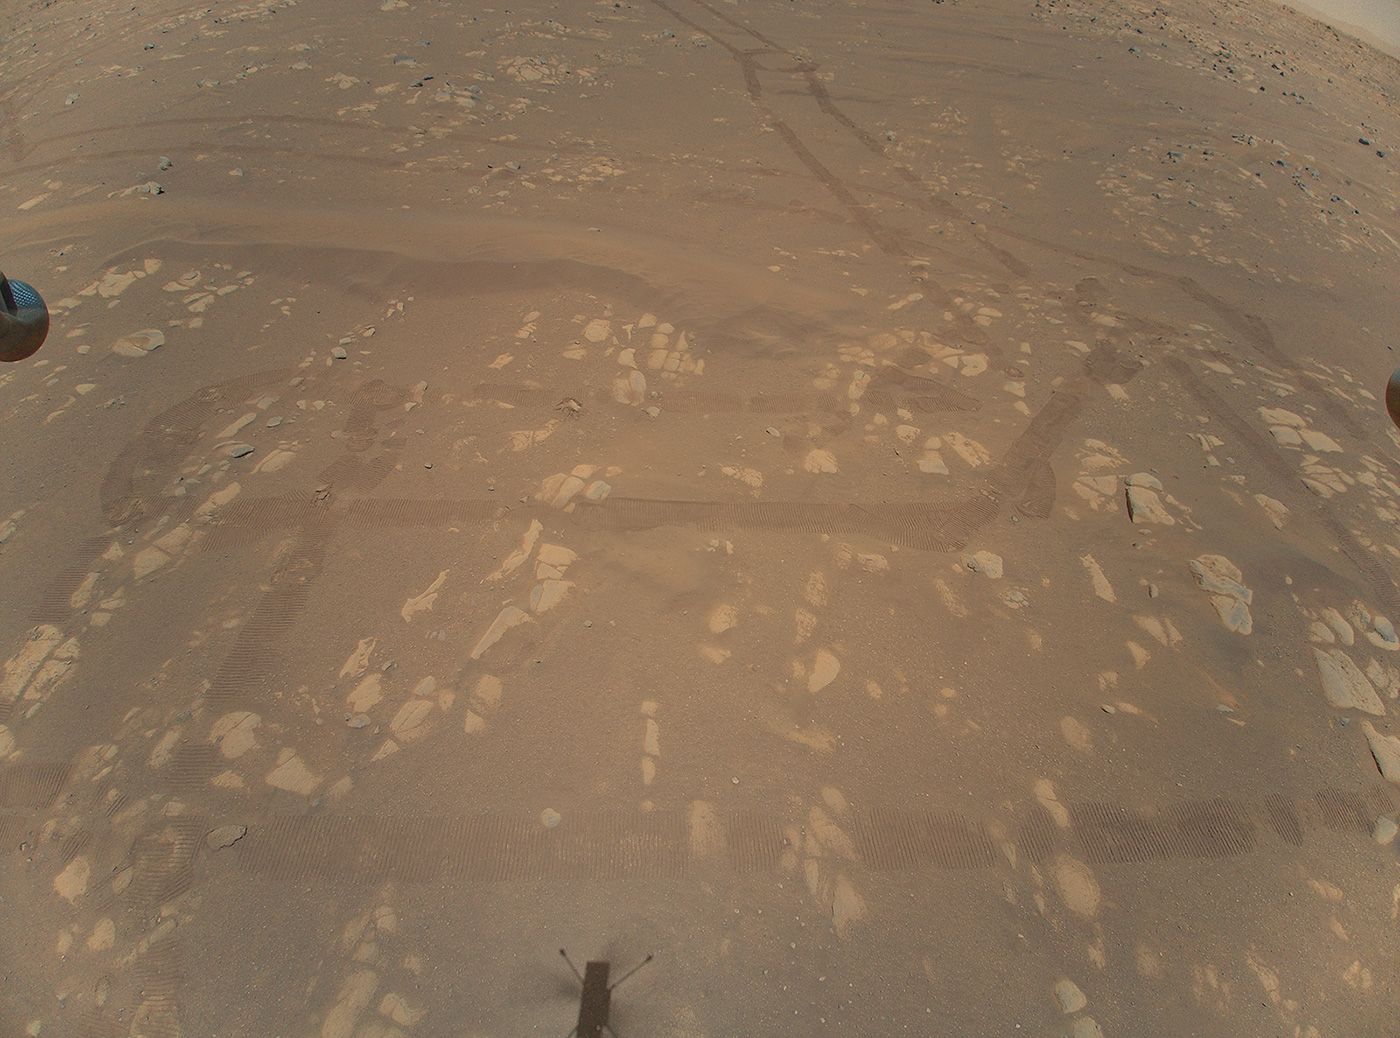 Снимка на Марс от въздуха